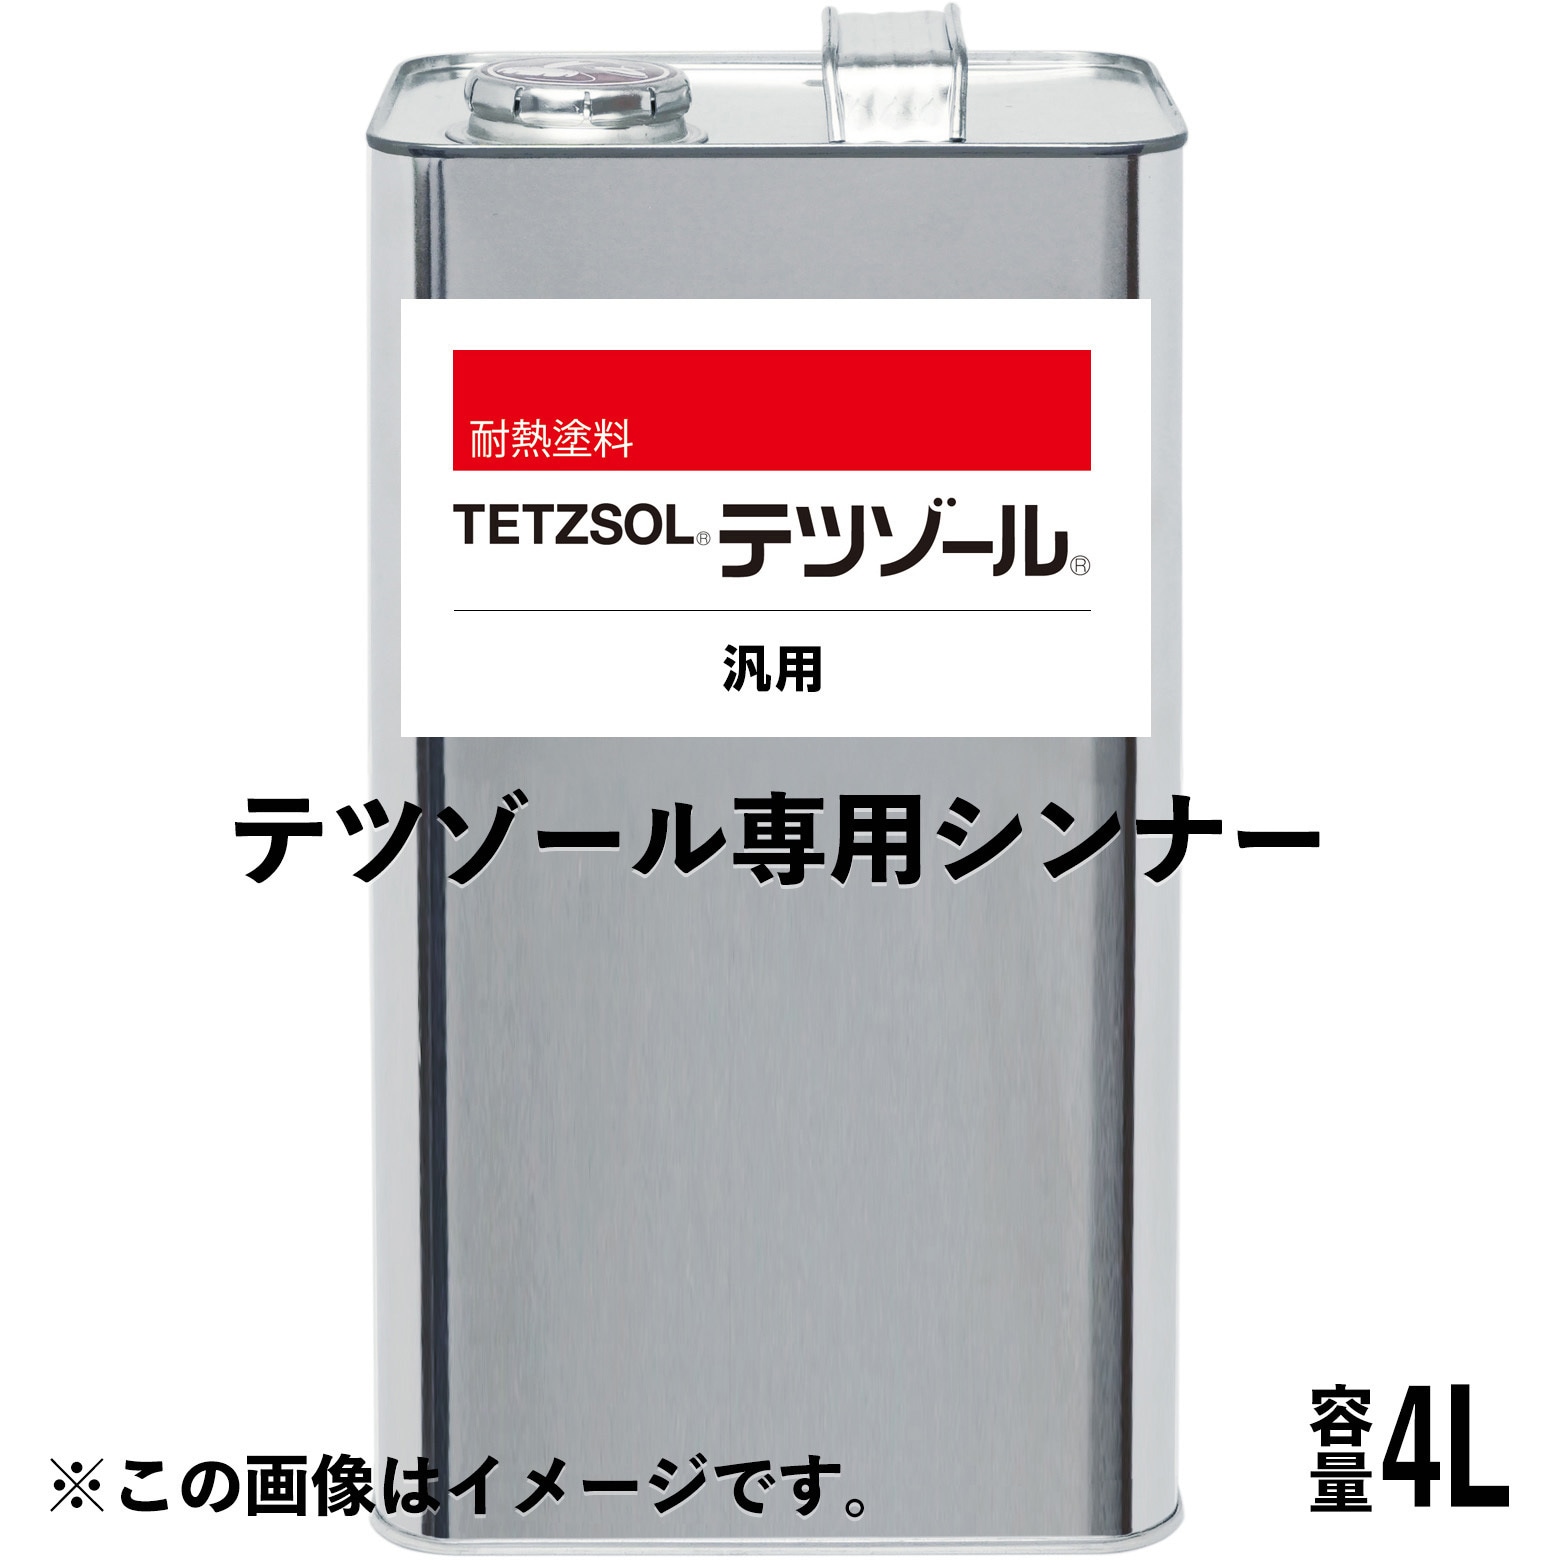 日本ペイント ハイポンエポキシシンナーS 16L 業務用 洗浄 塗料希釈 洗い - 4